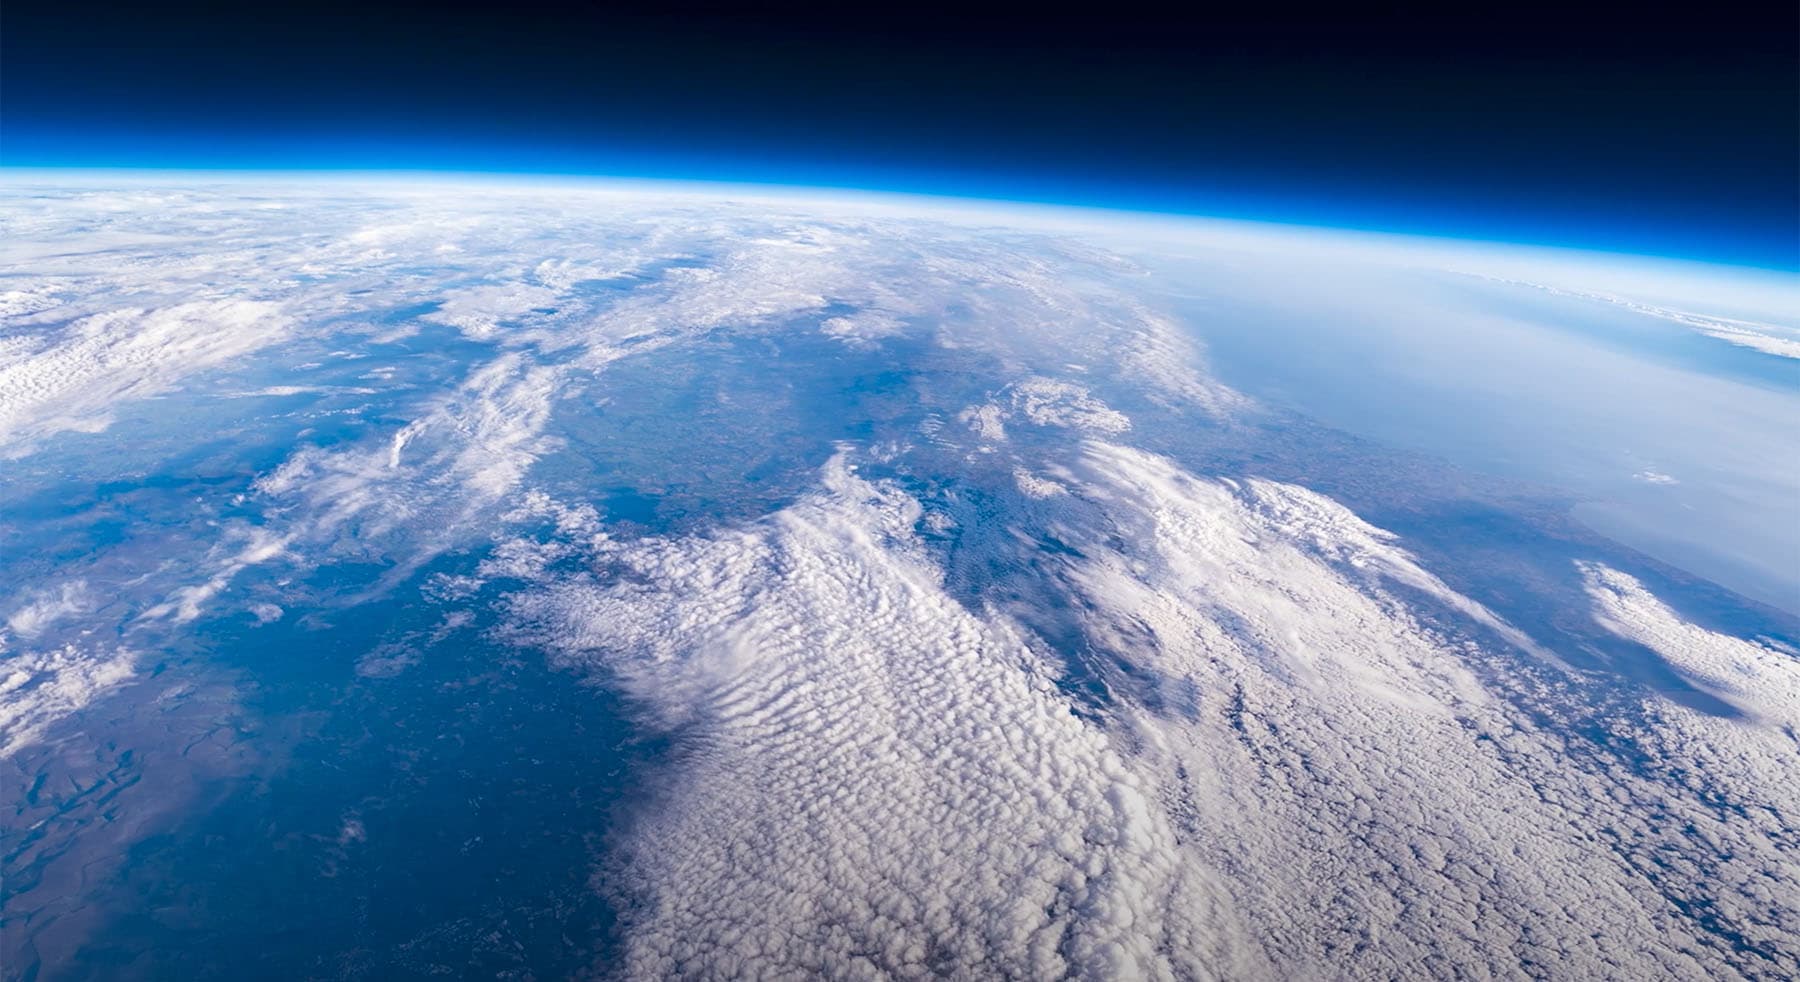 Sigma gửi bộ thiết bị lên khí quyển, độ cao hơn 30km để chụp lại bức ảnh bề mặt Trái Đất